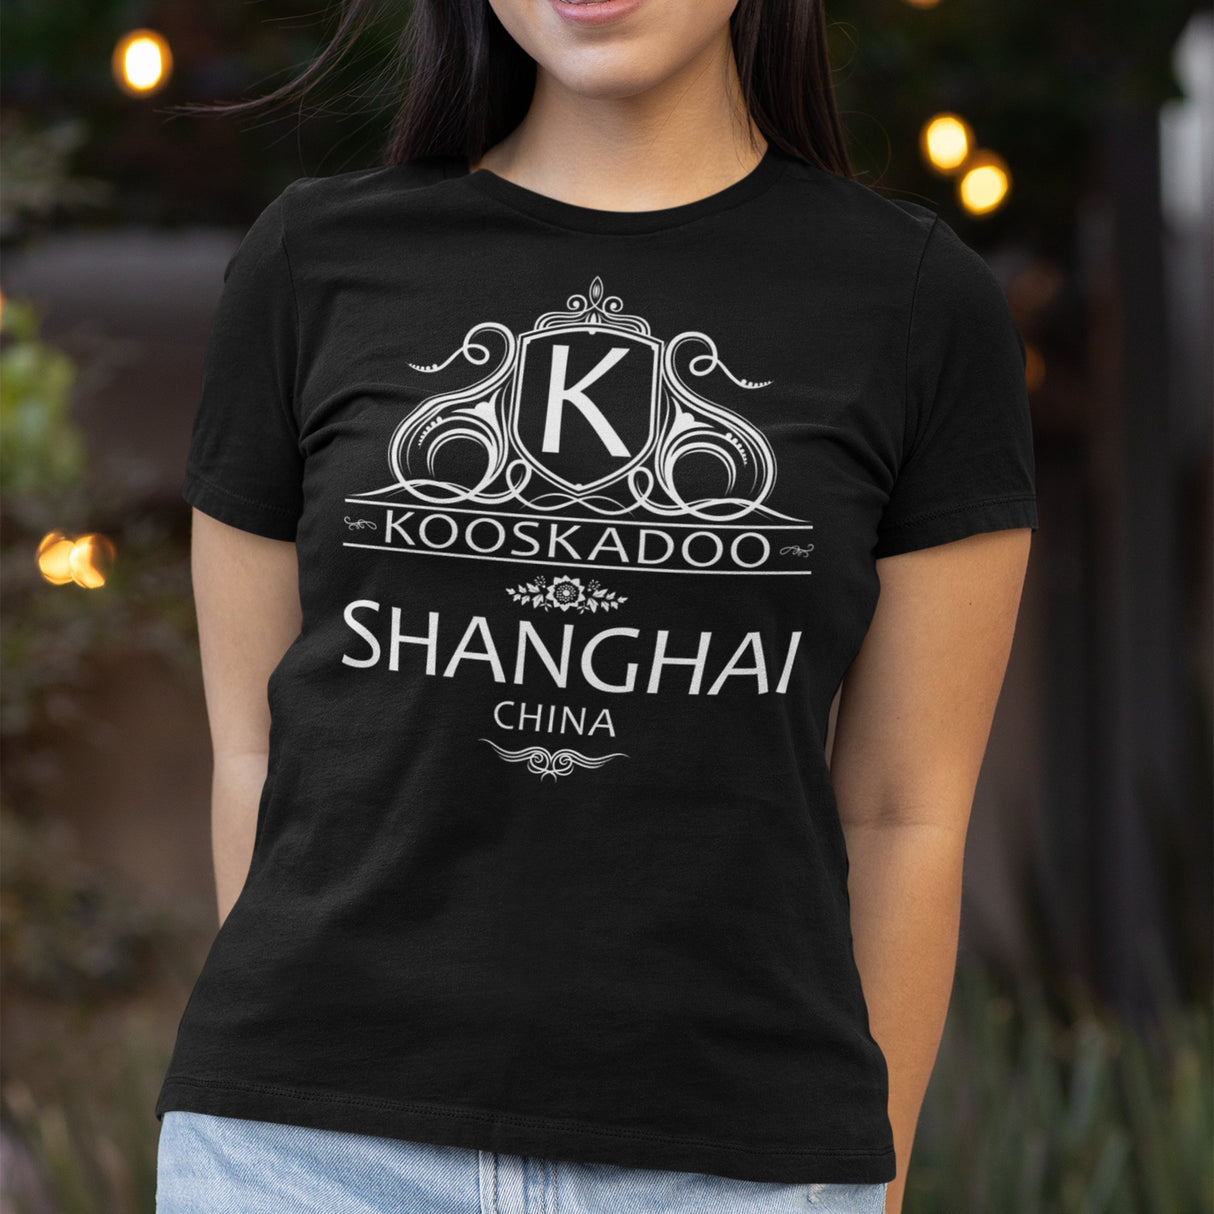 kooskadoo-shang-hai-shang-hai-tee-china-t-shirt-mandarin-tee-t-shirt-tee#color_black